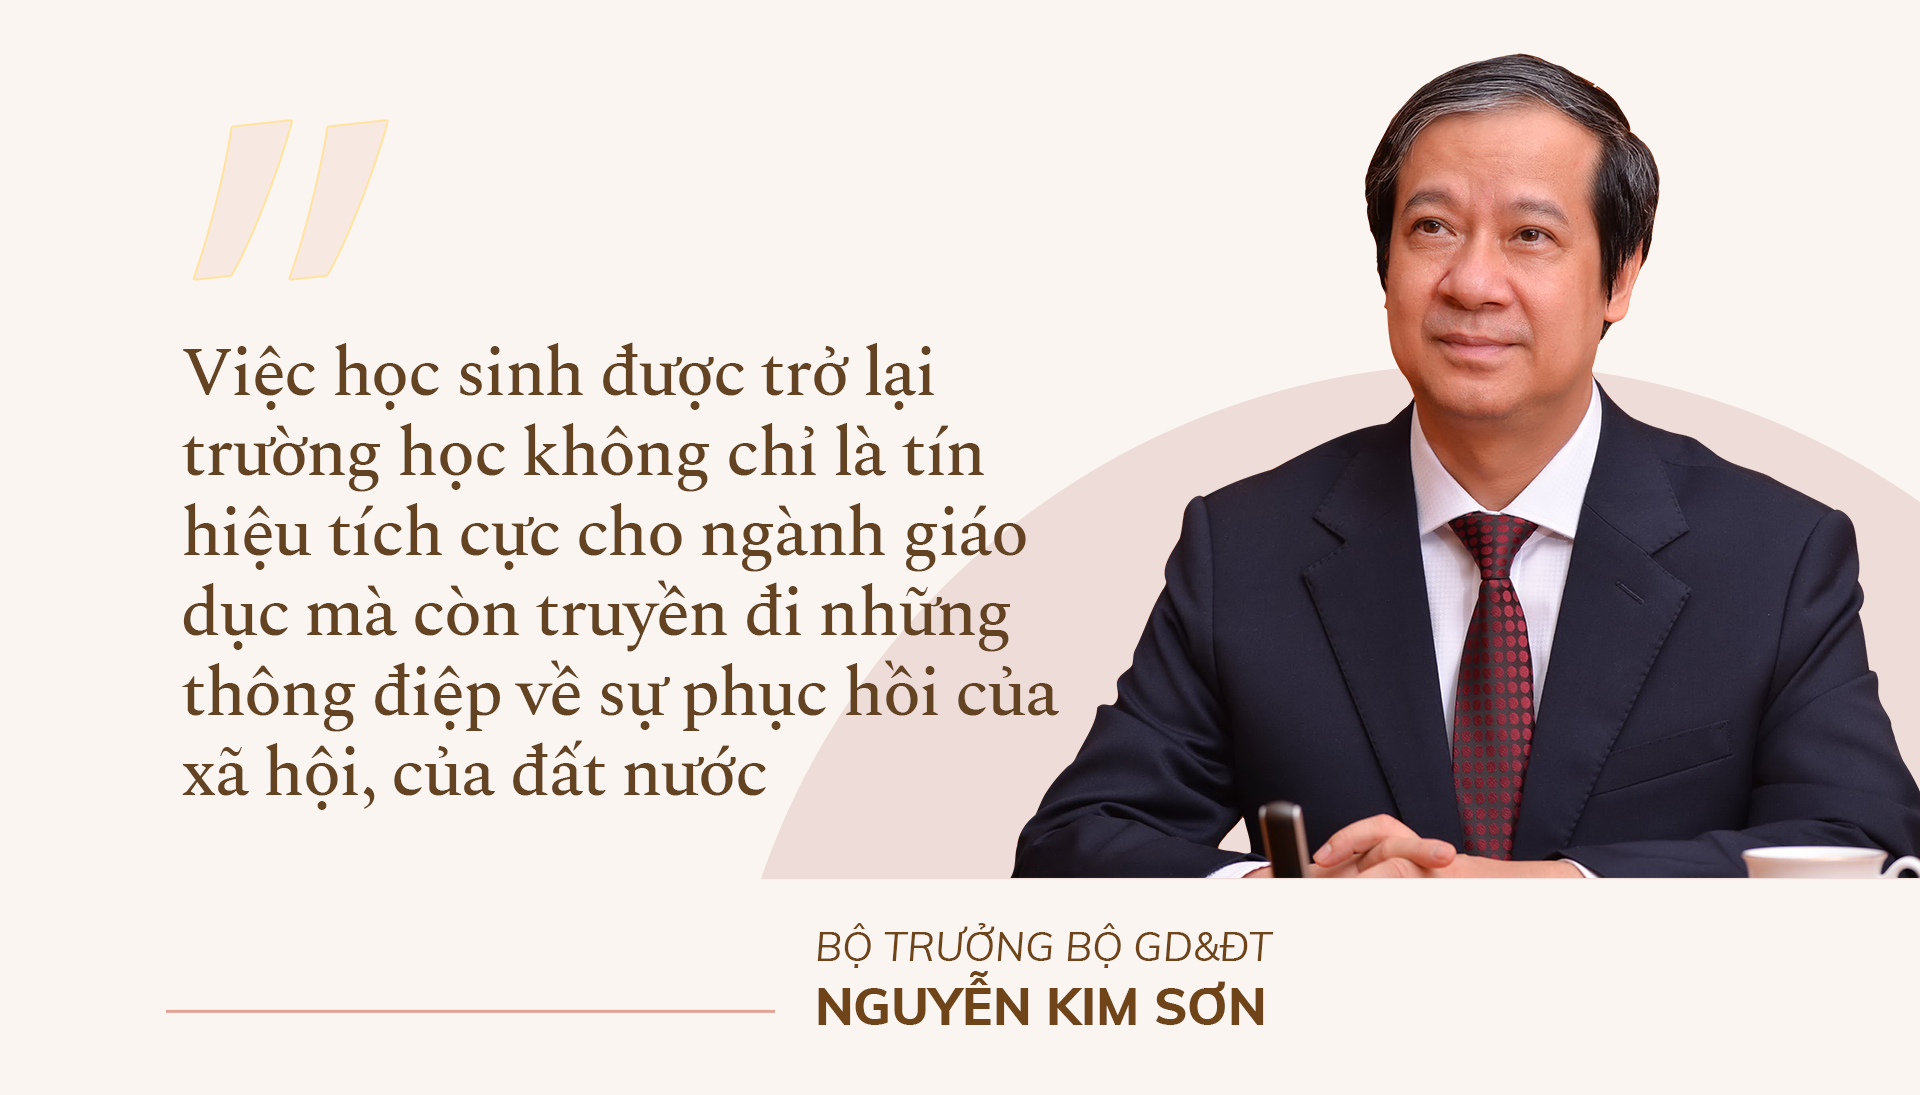 Bộ trưởng Bộ GD&ĐT Nguyễn Kim Sơn: Bù đắp kiến thức, tái thiết giáo dục - ảnh 3